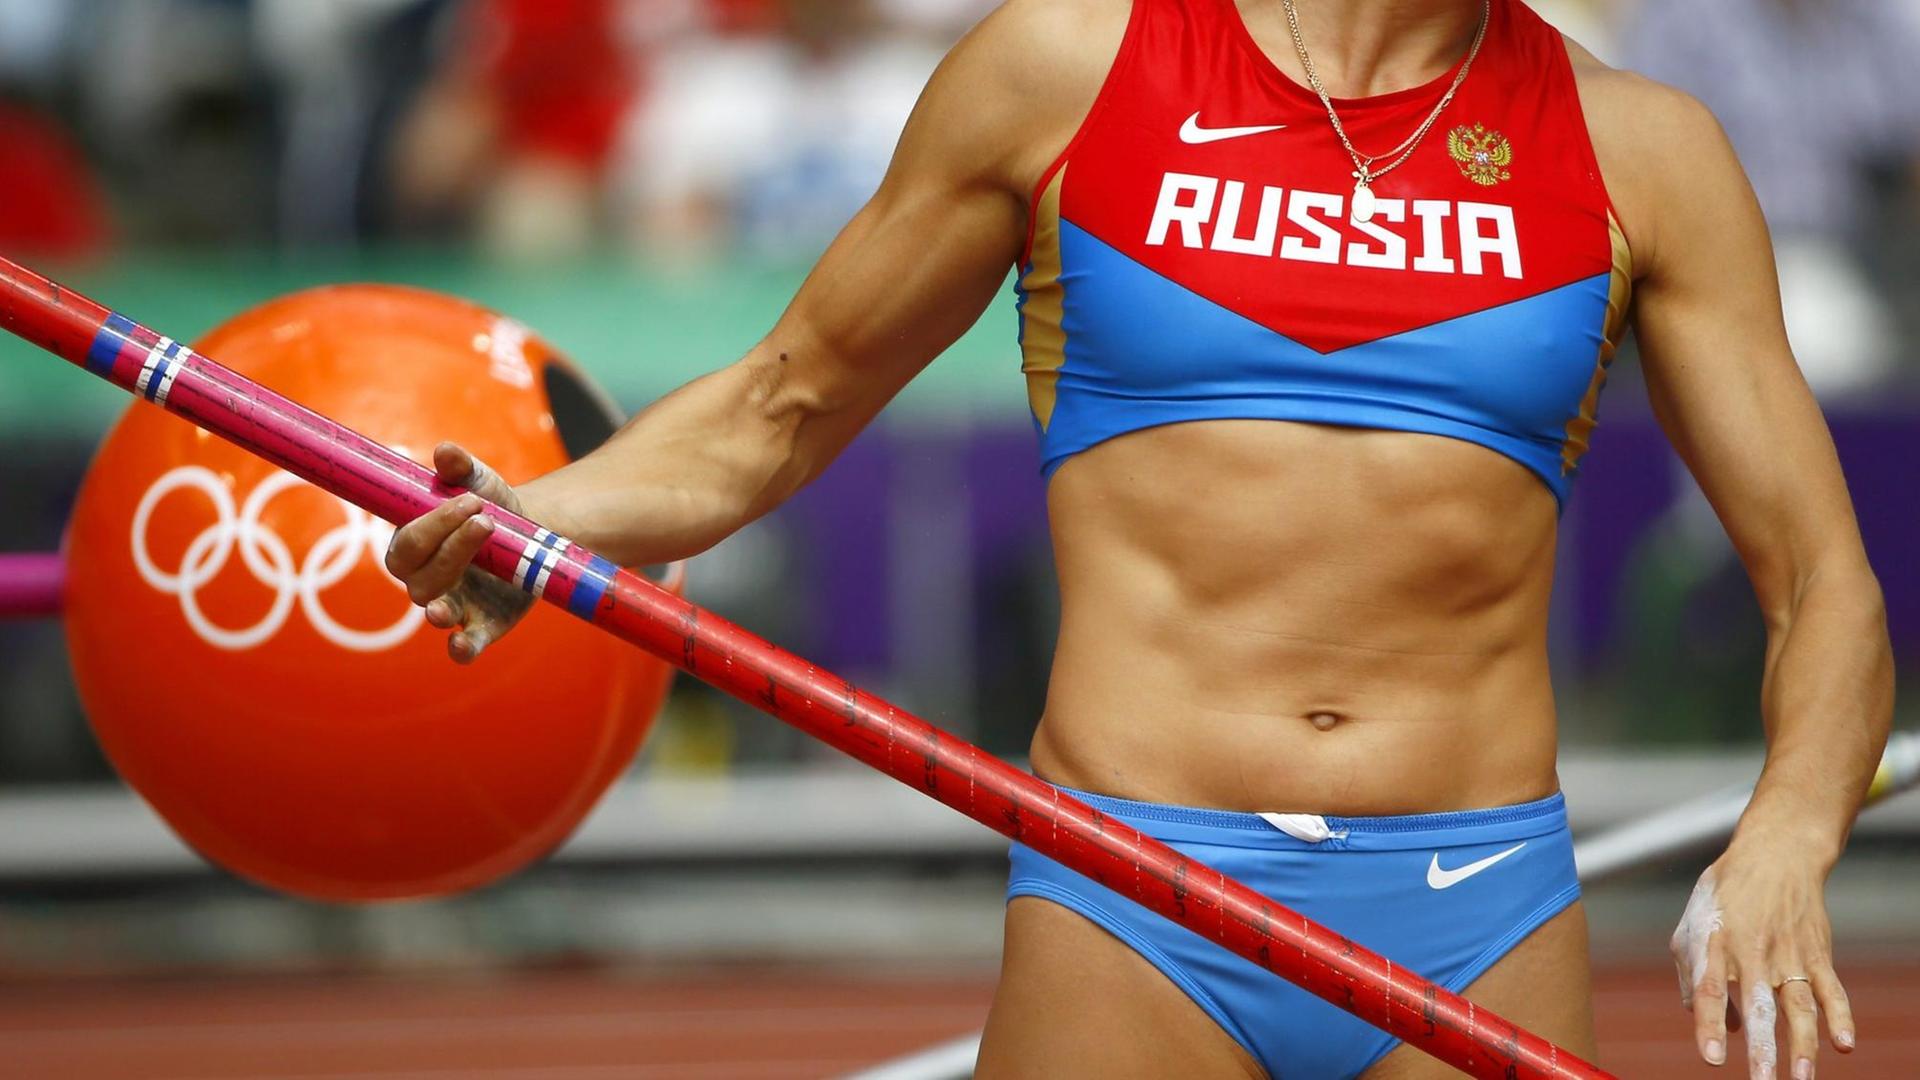 Nahaufnahme vom Trikot einer russischen Sportlerin.